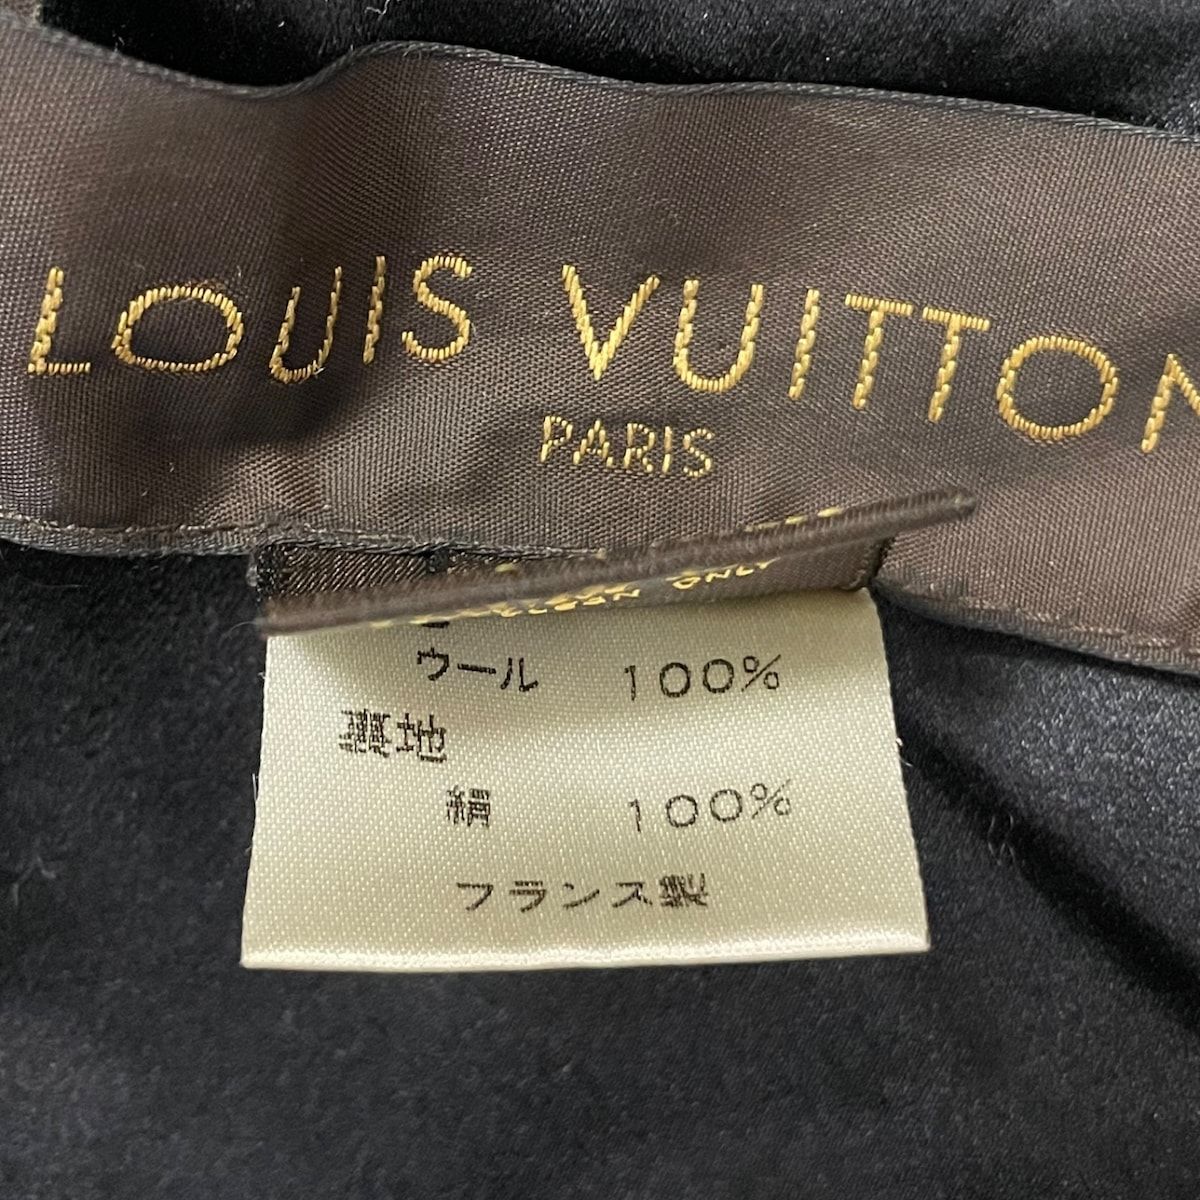 LOUIS VUITTON(ルイヴィトン) コート サイズ34 S レディース美品 - 黒 長袖/ジップアップ/春/秋 ウール